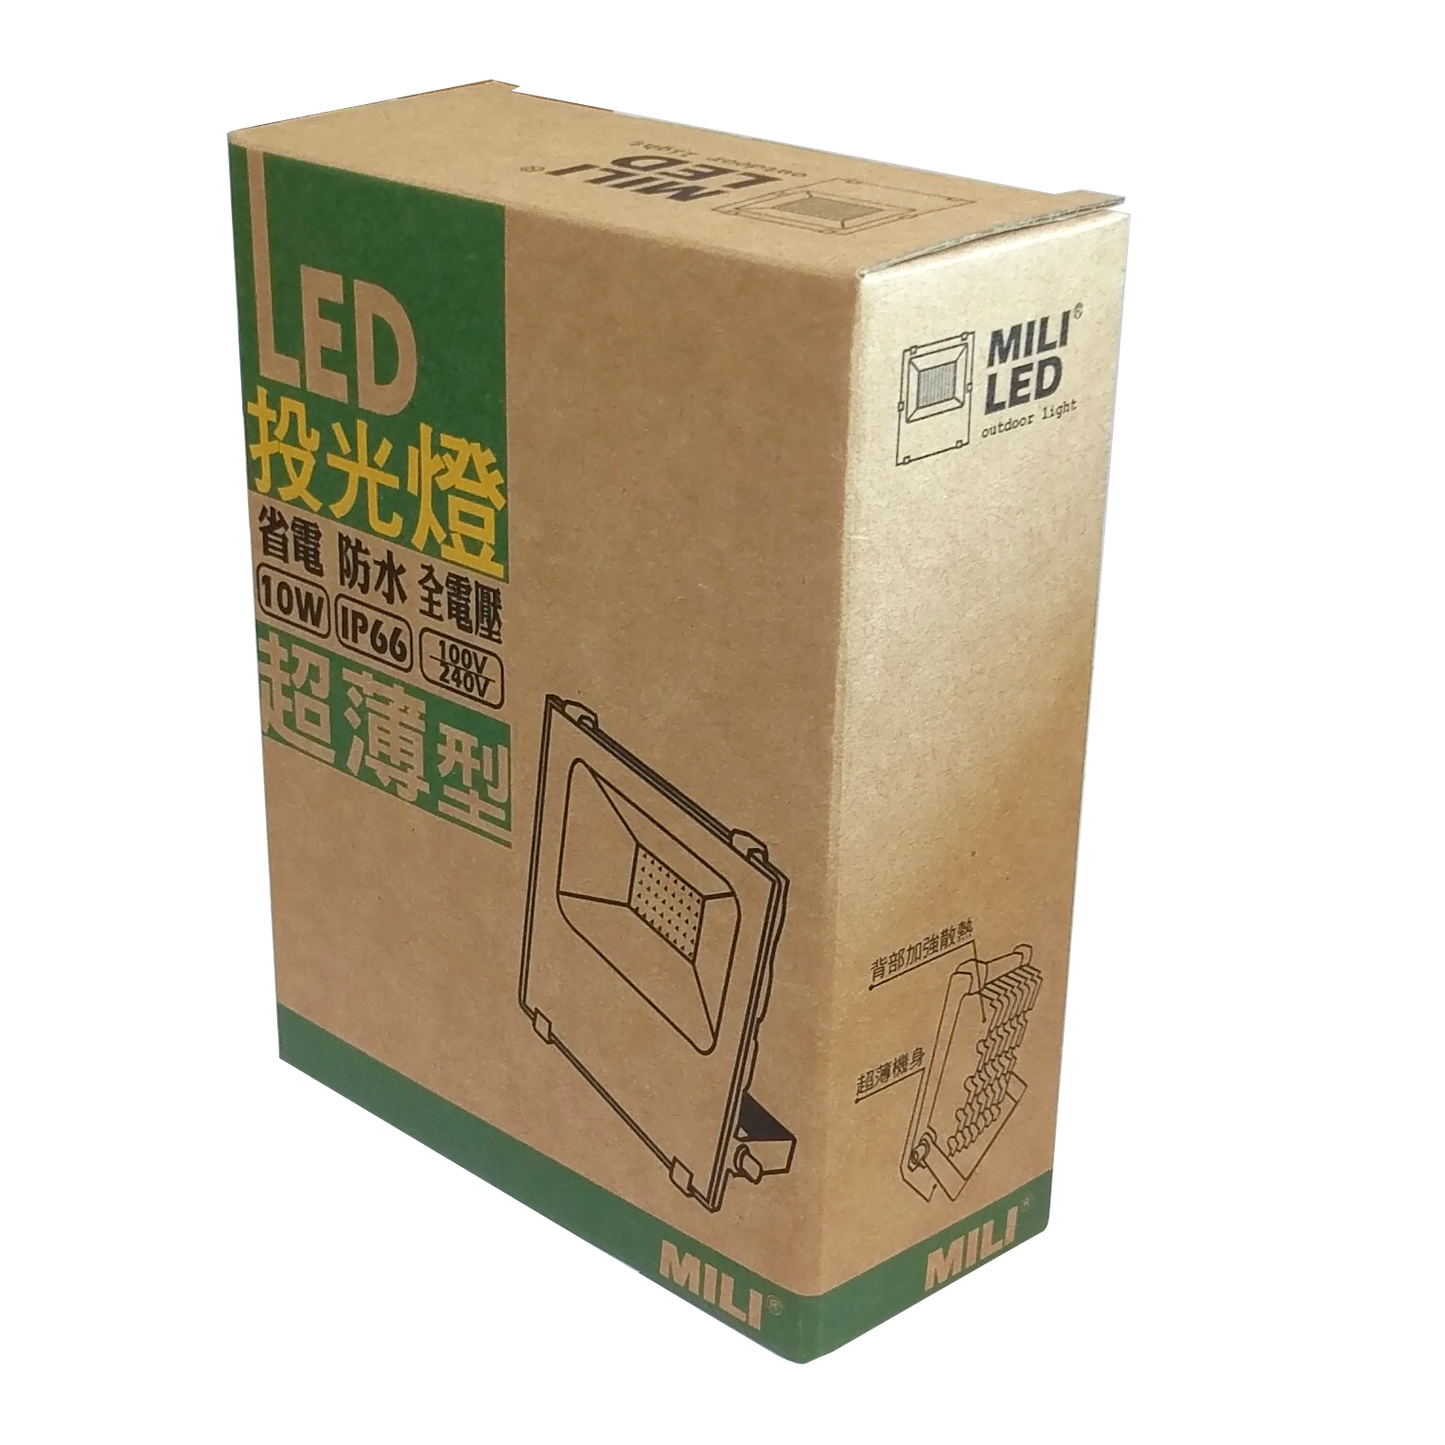 LED超薄型SMD 10W投光燈